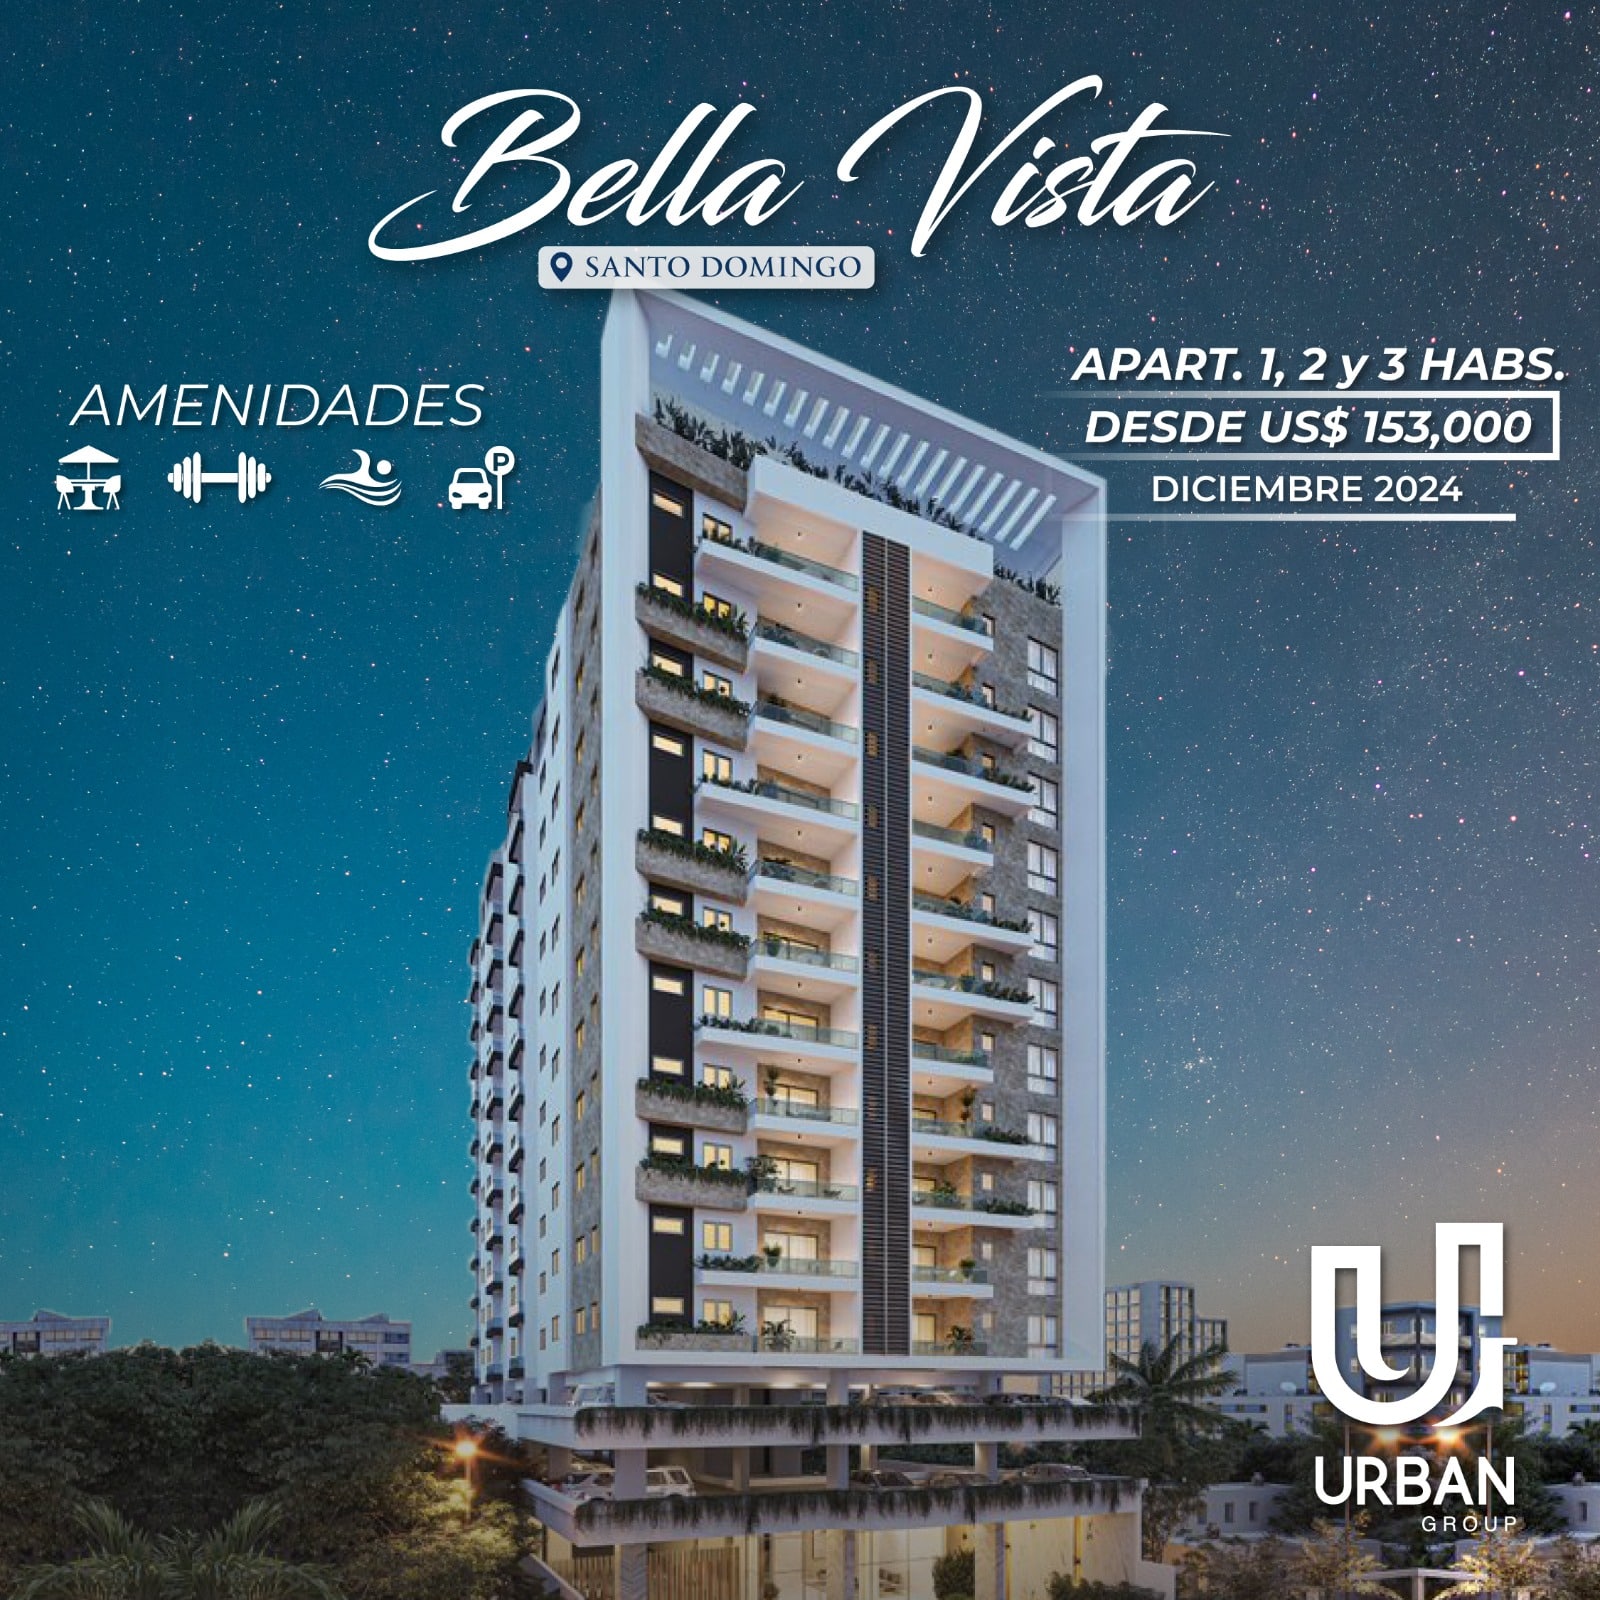 Apartamentos de 1, 2 & 3 Habitaciones Desde US$153,000 Bella Vista